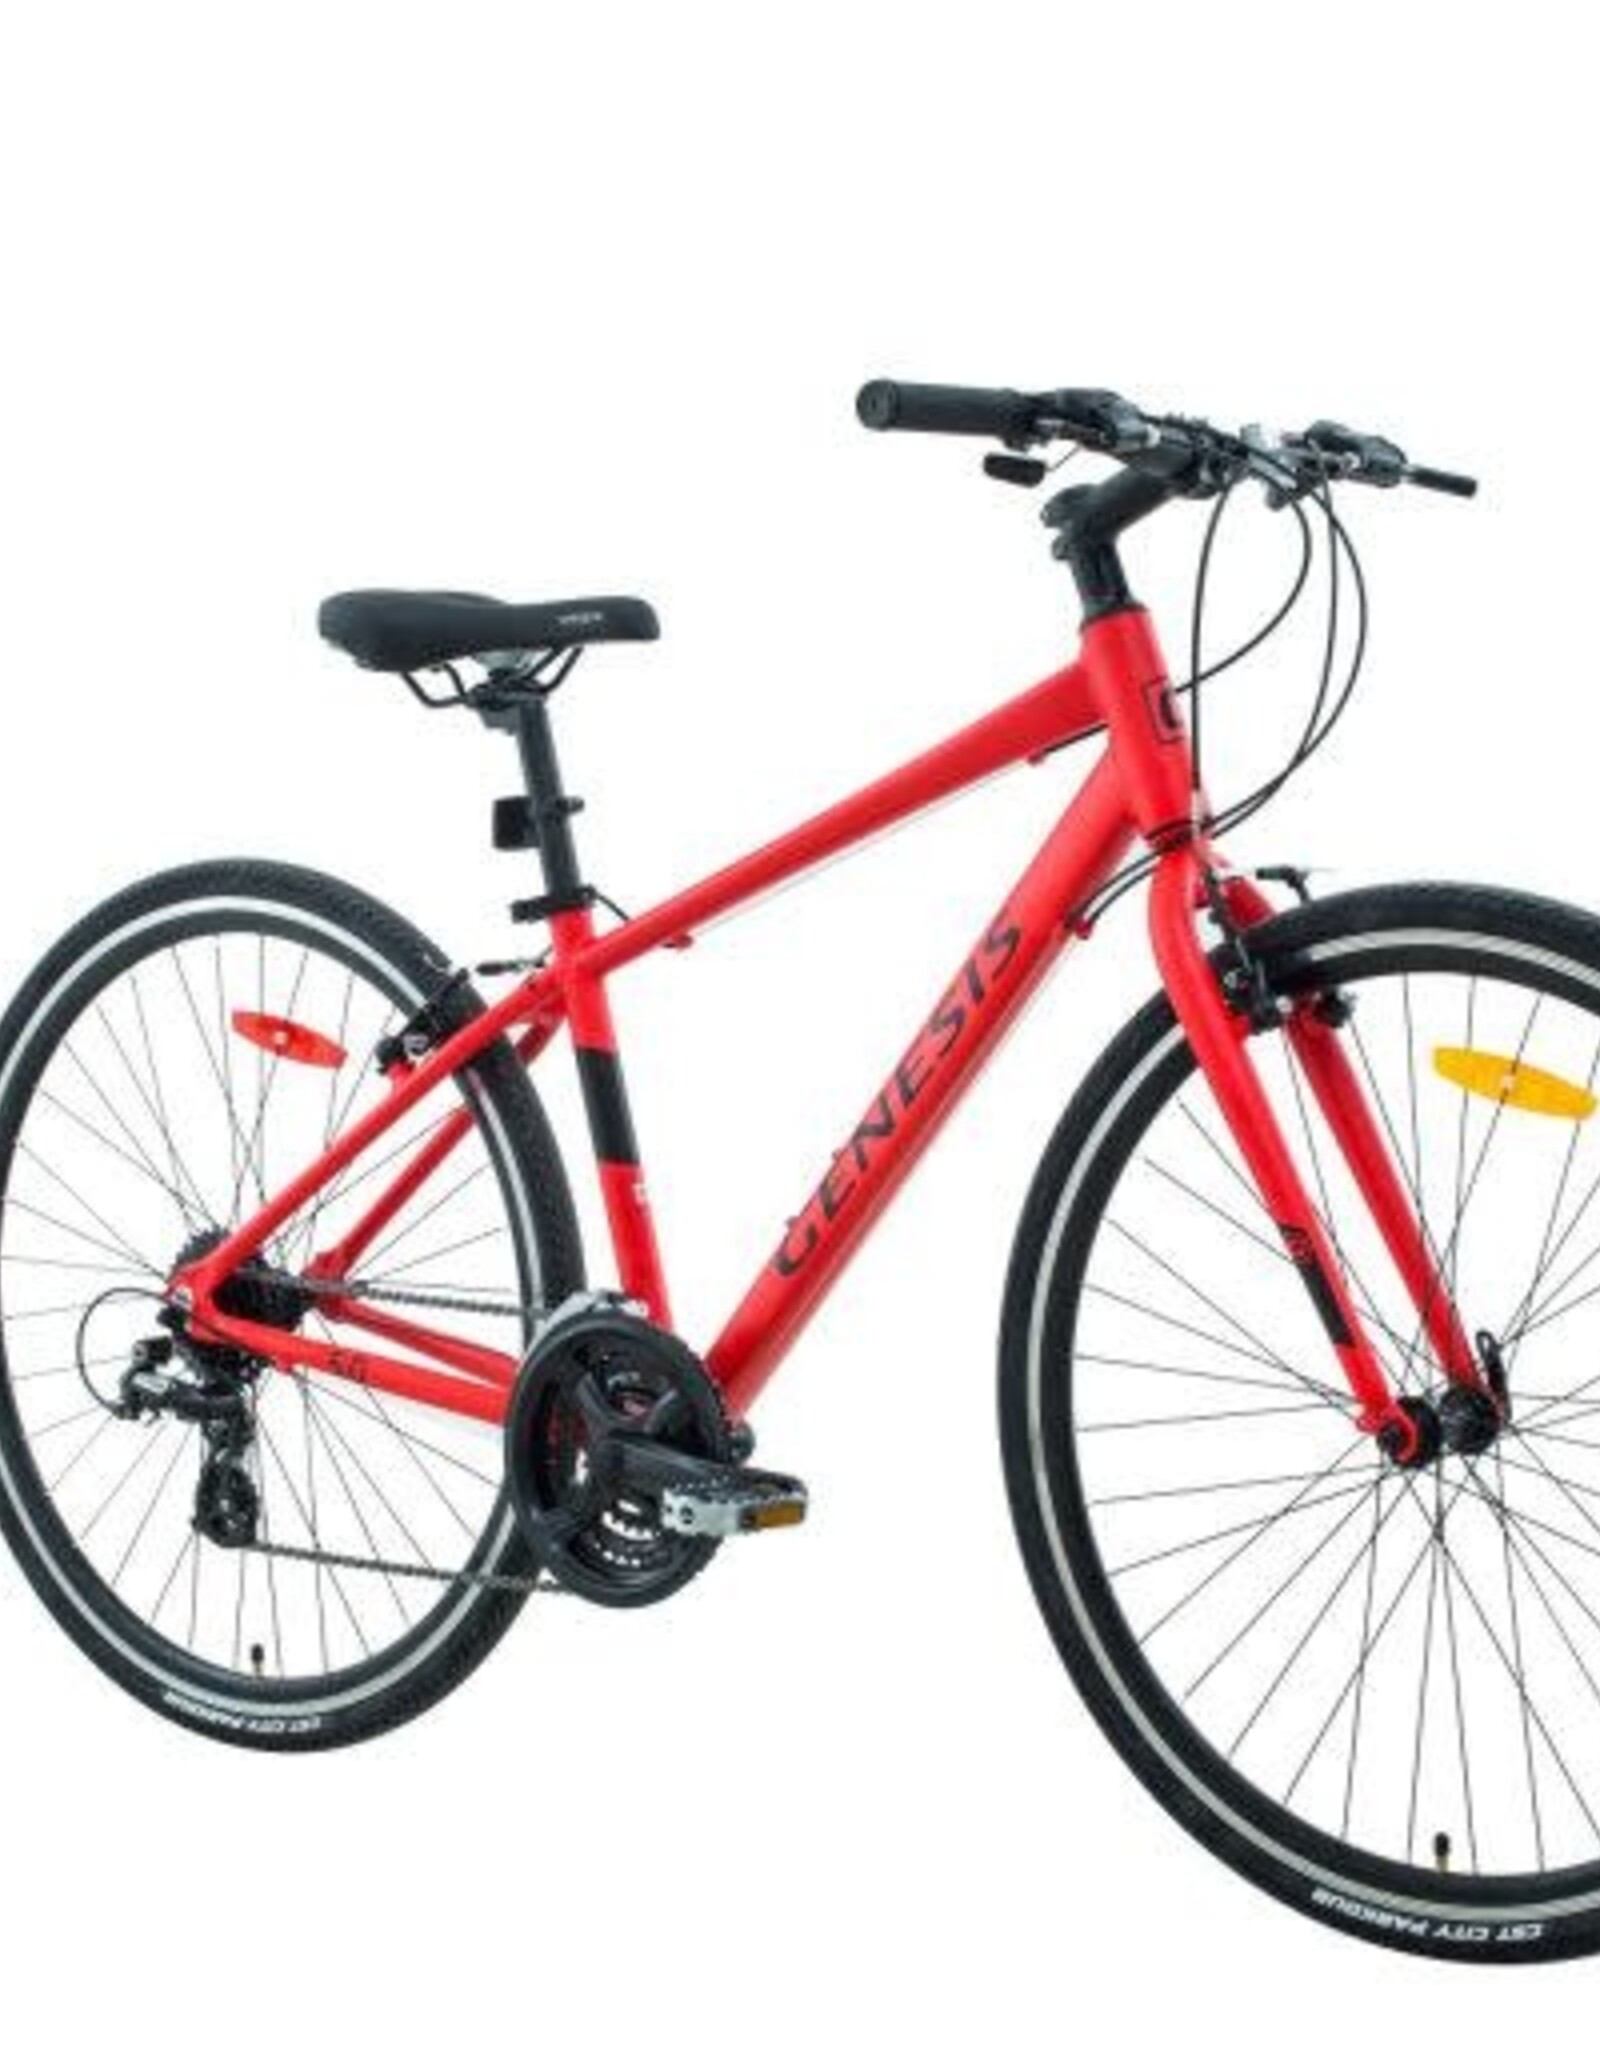 Vélo Genesis Trafik 5.0 16''-24 vitesses rouge mat-noir